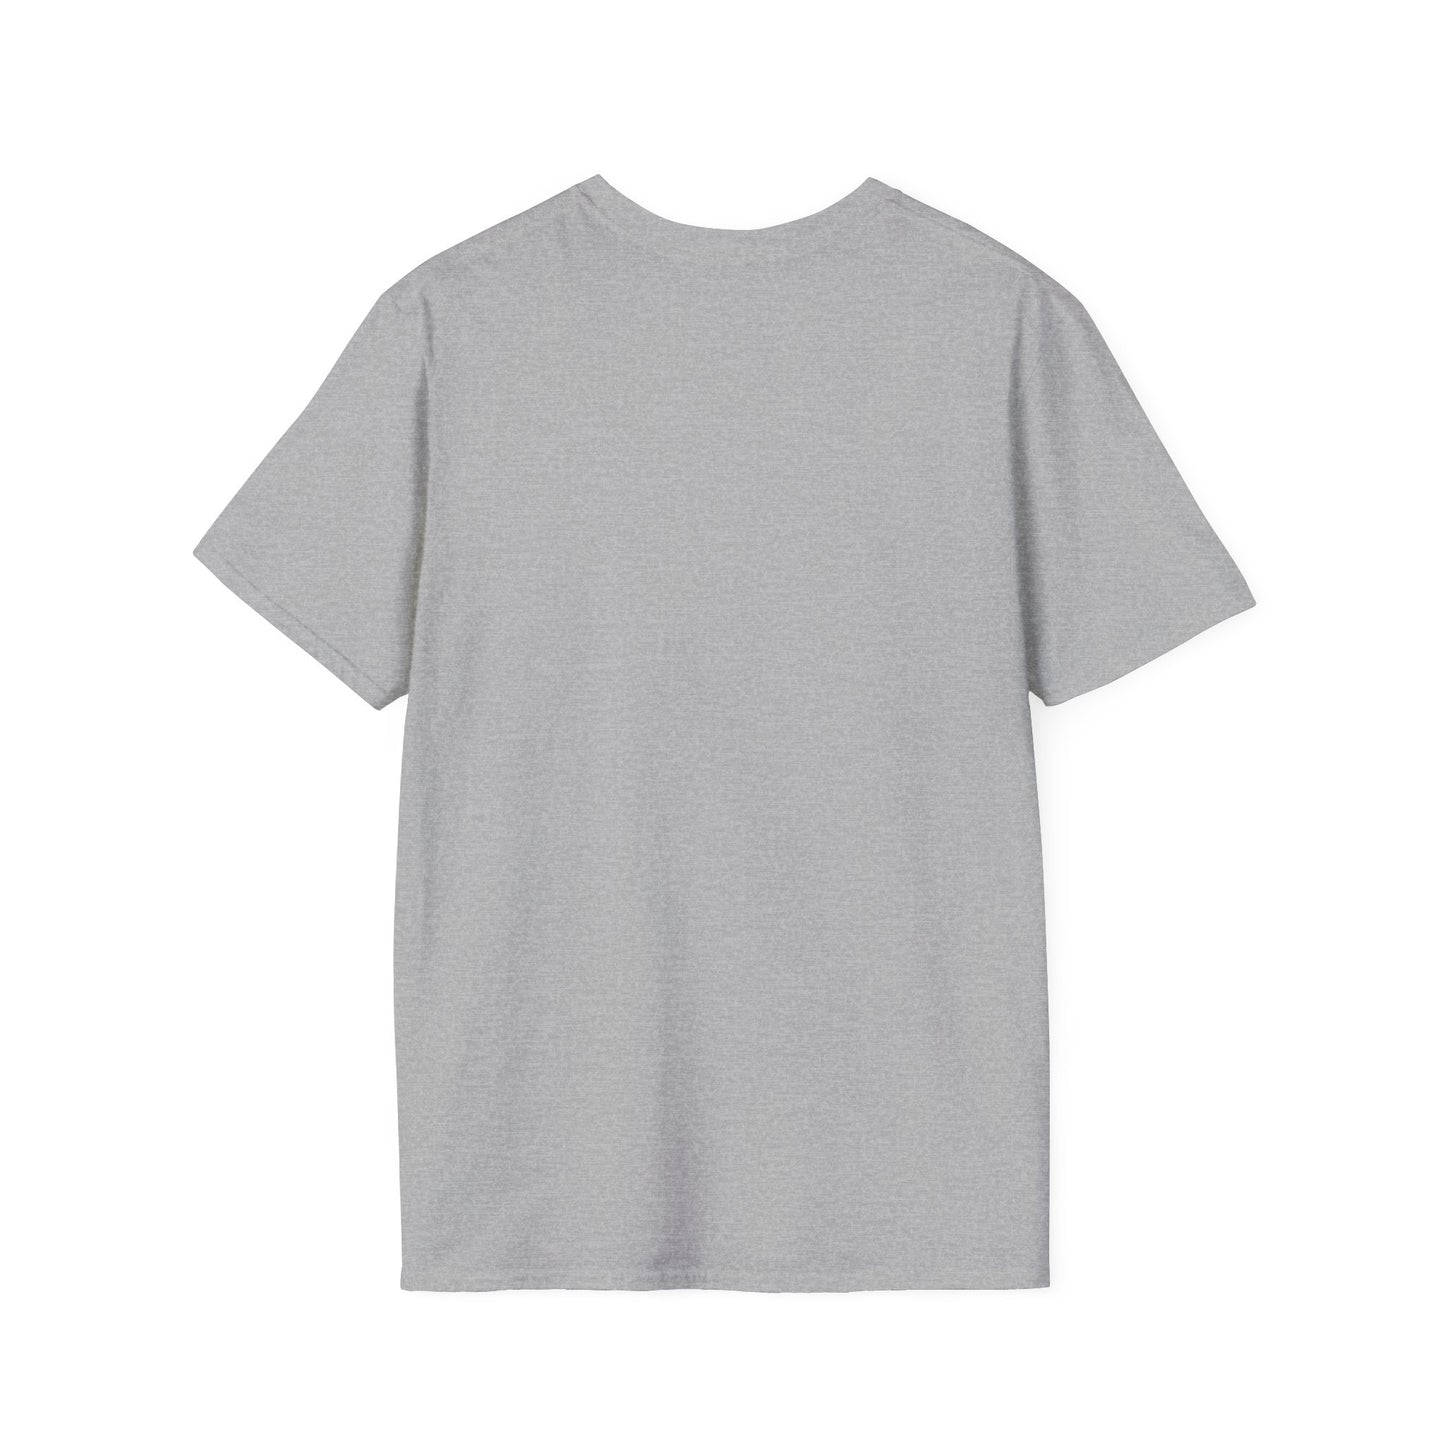 OVERSTIMULATED UNIVERSITY - Unisex Softstyle T-Shirt